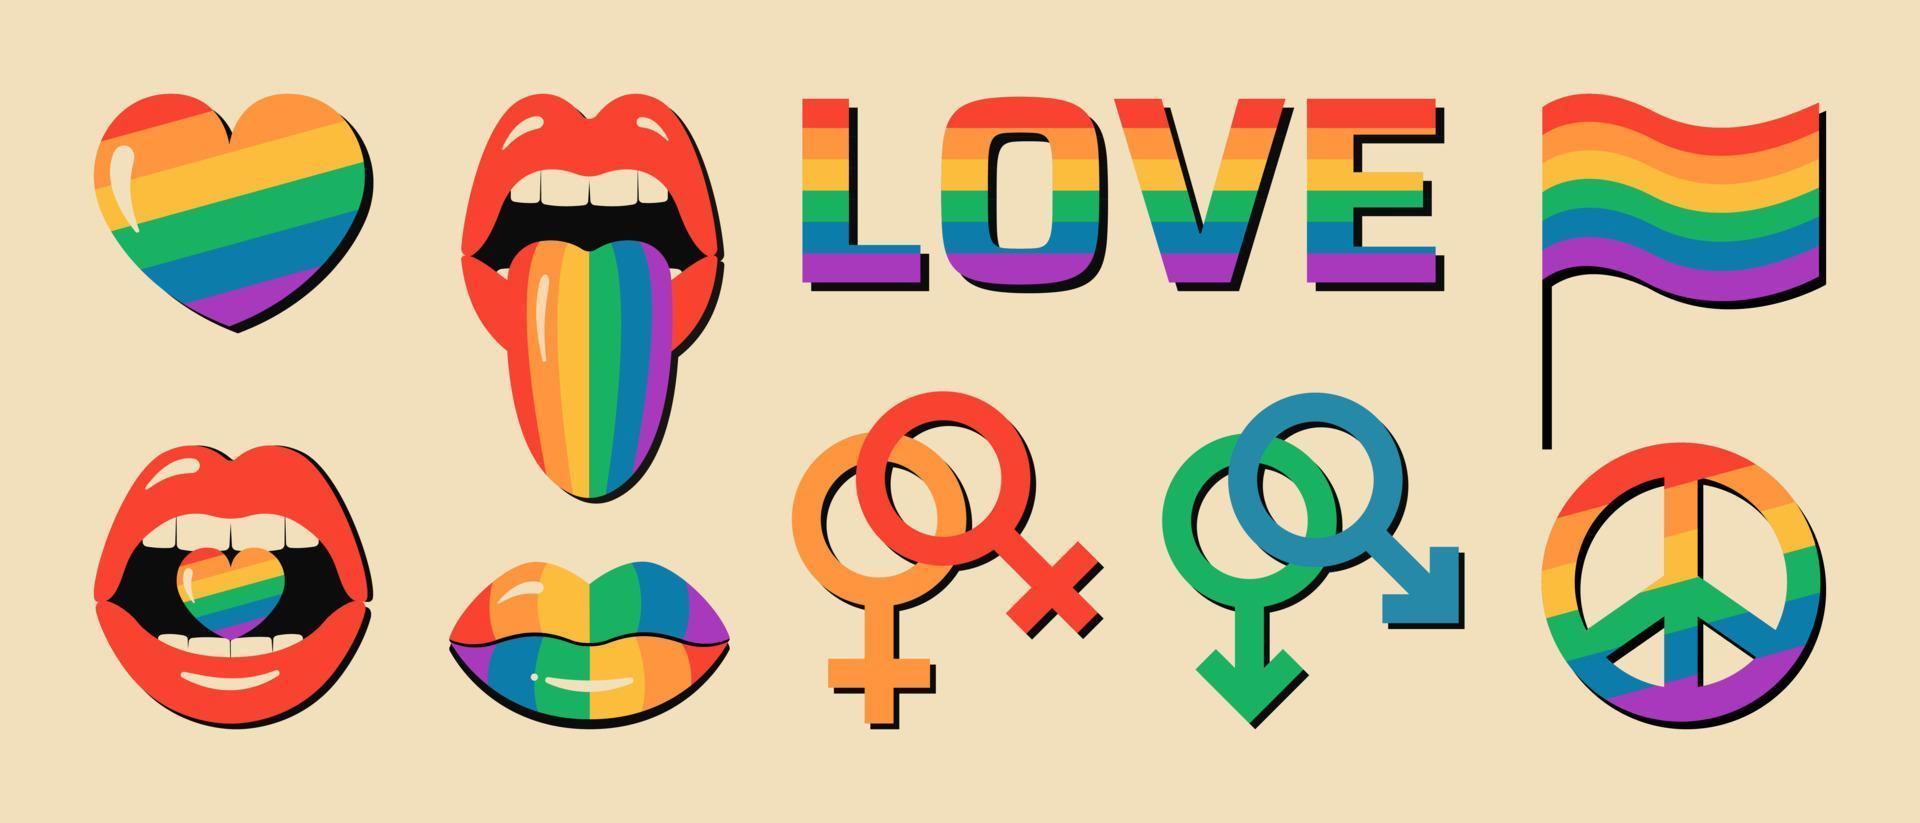 lgbt pride månad ikonuppsättning med homosexuella och lesbiska relationer könssymboler. vektor